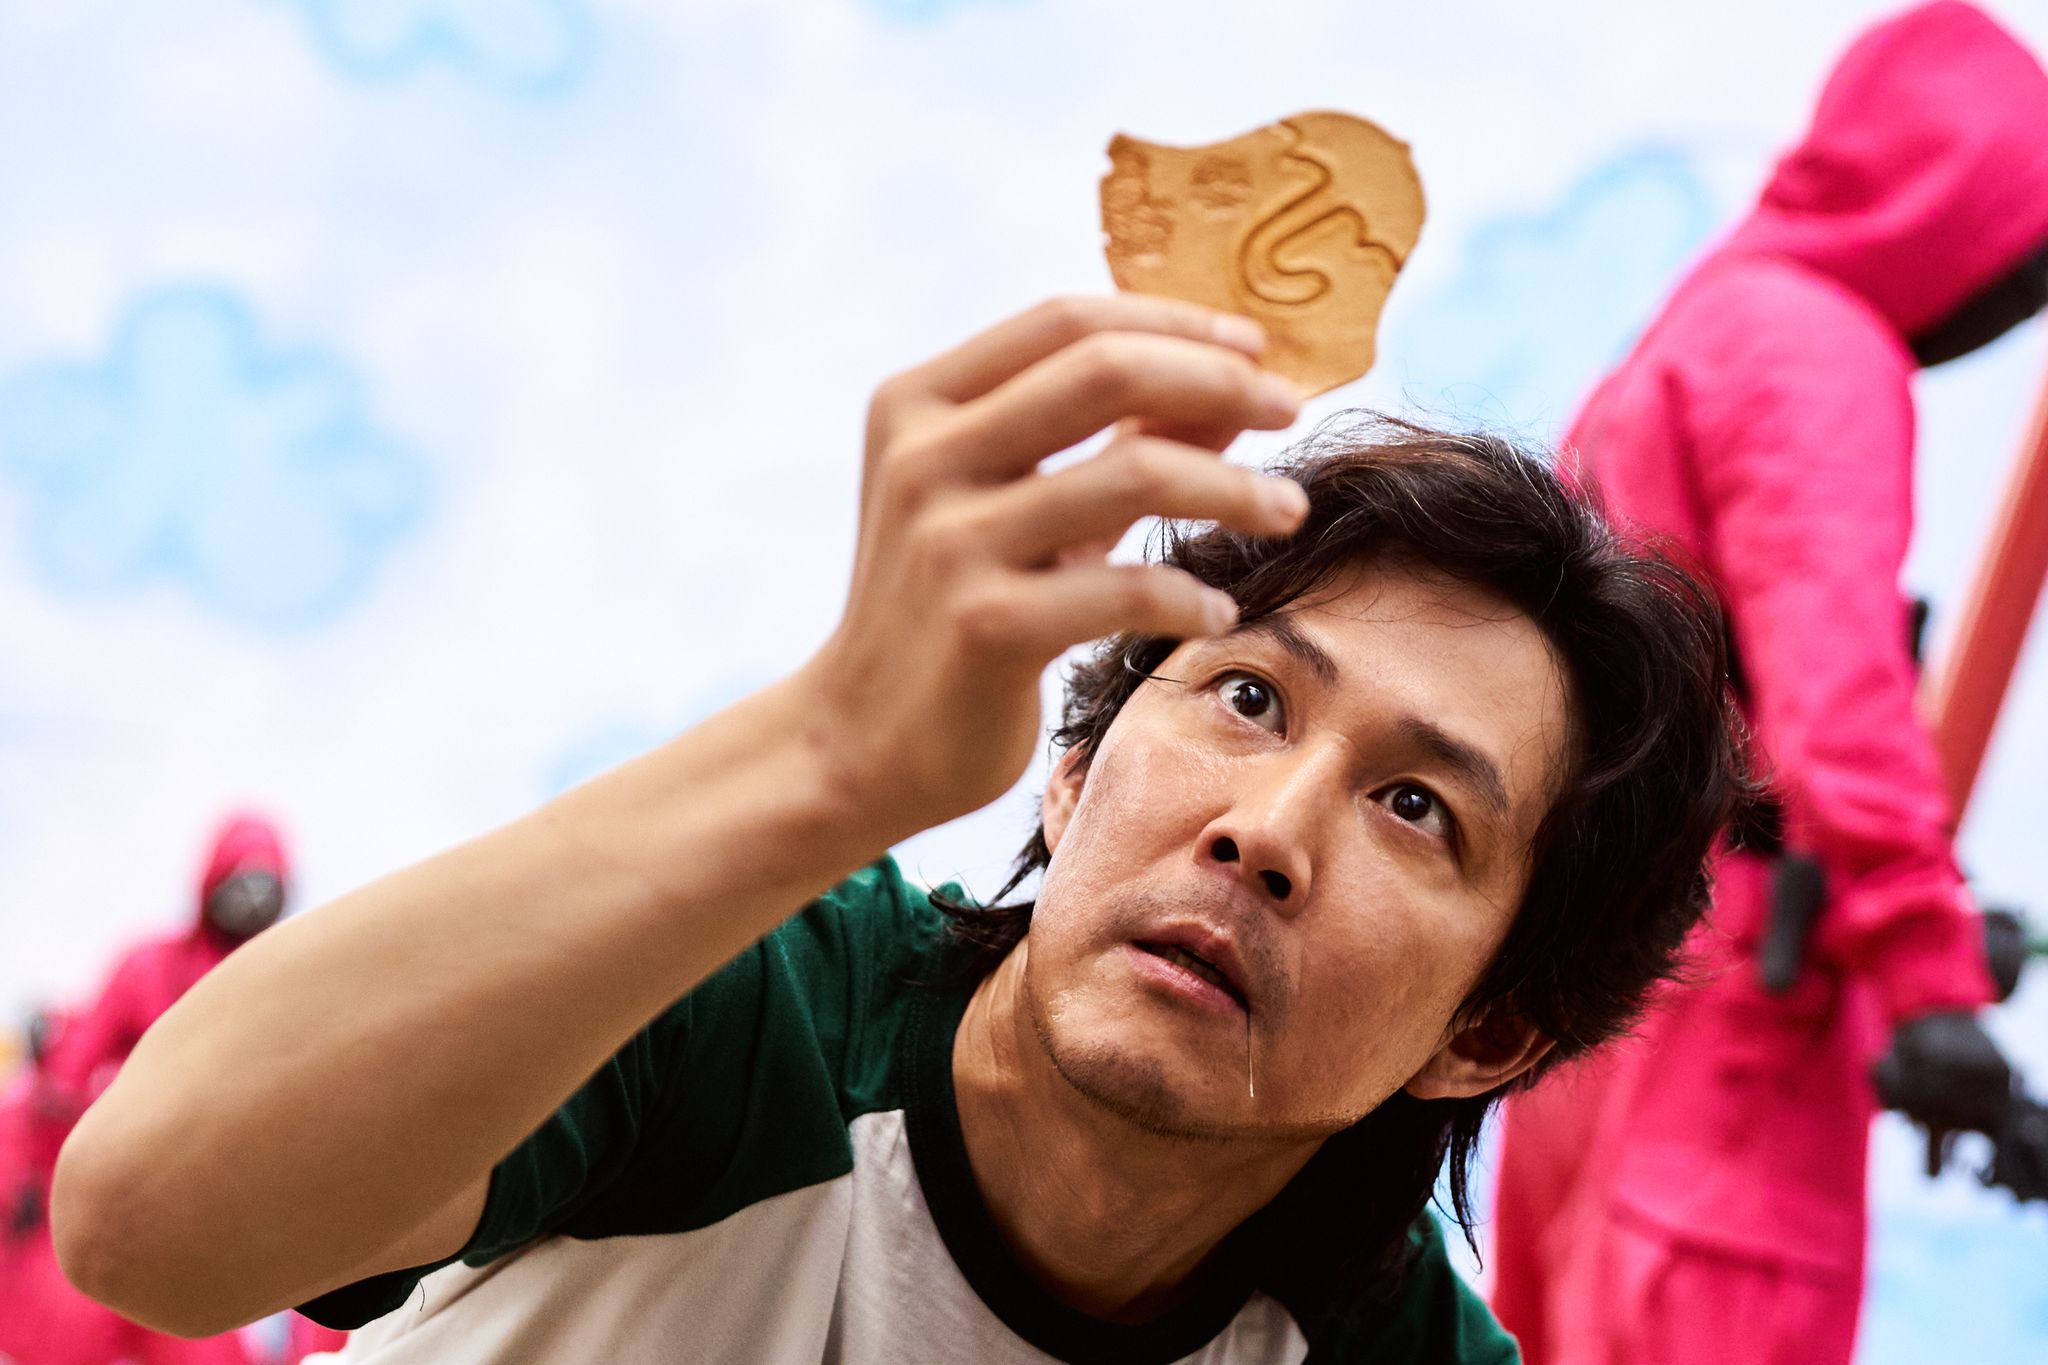 Desde "El juego del calamar", las series coreanas se destacan entre las favoritas del público. (Youngkyu Park/Netflix/dpa)